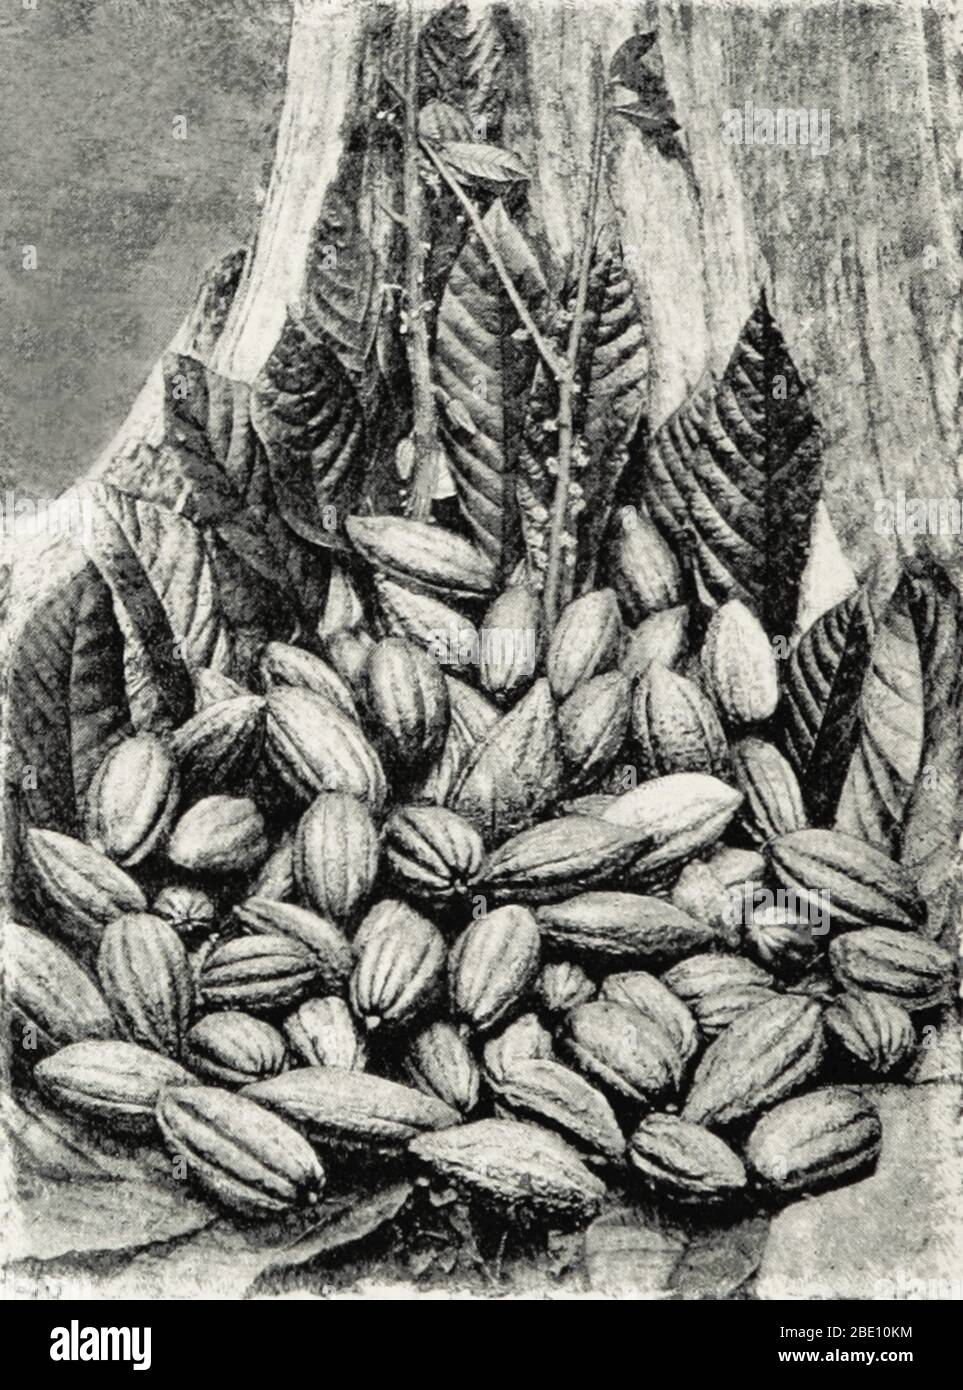 Vainas de cacao del árbol de cacao (Theobroma cacao) en Ceilán, 1893. Hasta que Colón trajo granos de cacao de vuelta a España a principios del siglo XV, Europa no estaba familiarizada con la popular bebida de cacao de América Central y del Sur. Después de la conquista española de los aztecas, el chocolate comenzó a importarse en Europa y rápidamente se convirtió en un favorito de la corte. Las plantaciones de cacao en las colonias se propagan, se ejecutan con mano de obra esclava, mientras que beber cacao se consideraba variantemente exótico, de moda, medicinal y peligroso. La producción de chocolate se desarrolló a lo largo de los siglos, hasta que se crearon barras de chocolate de estilo moderno Foto de stock